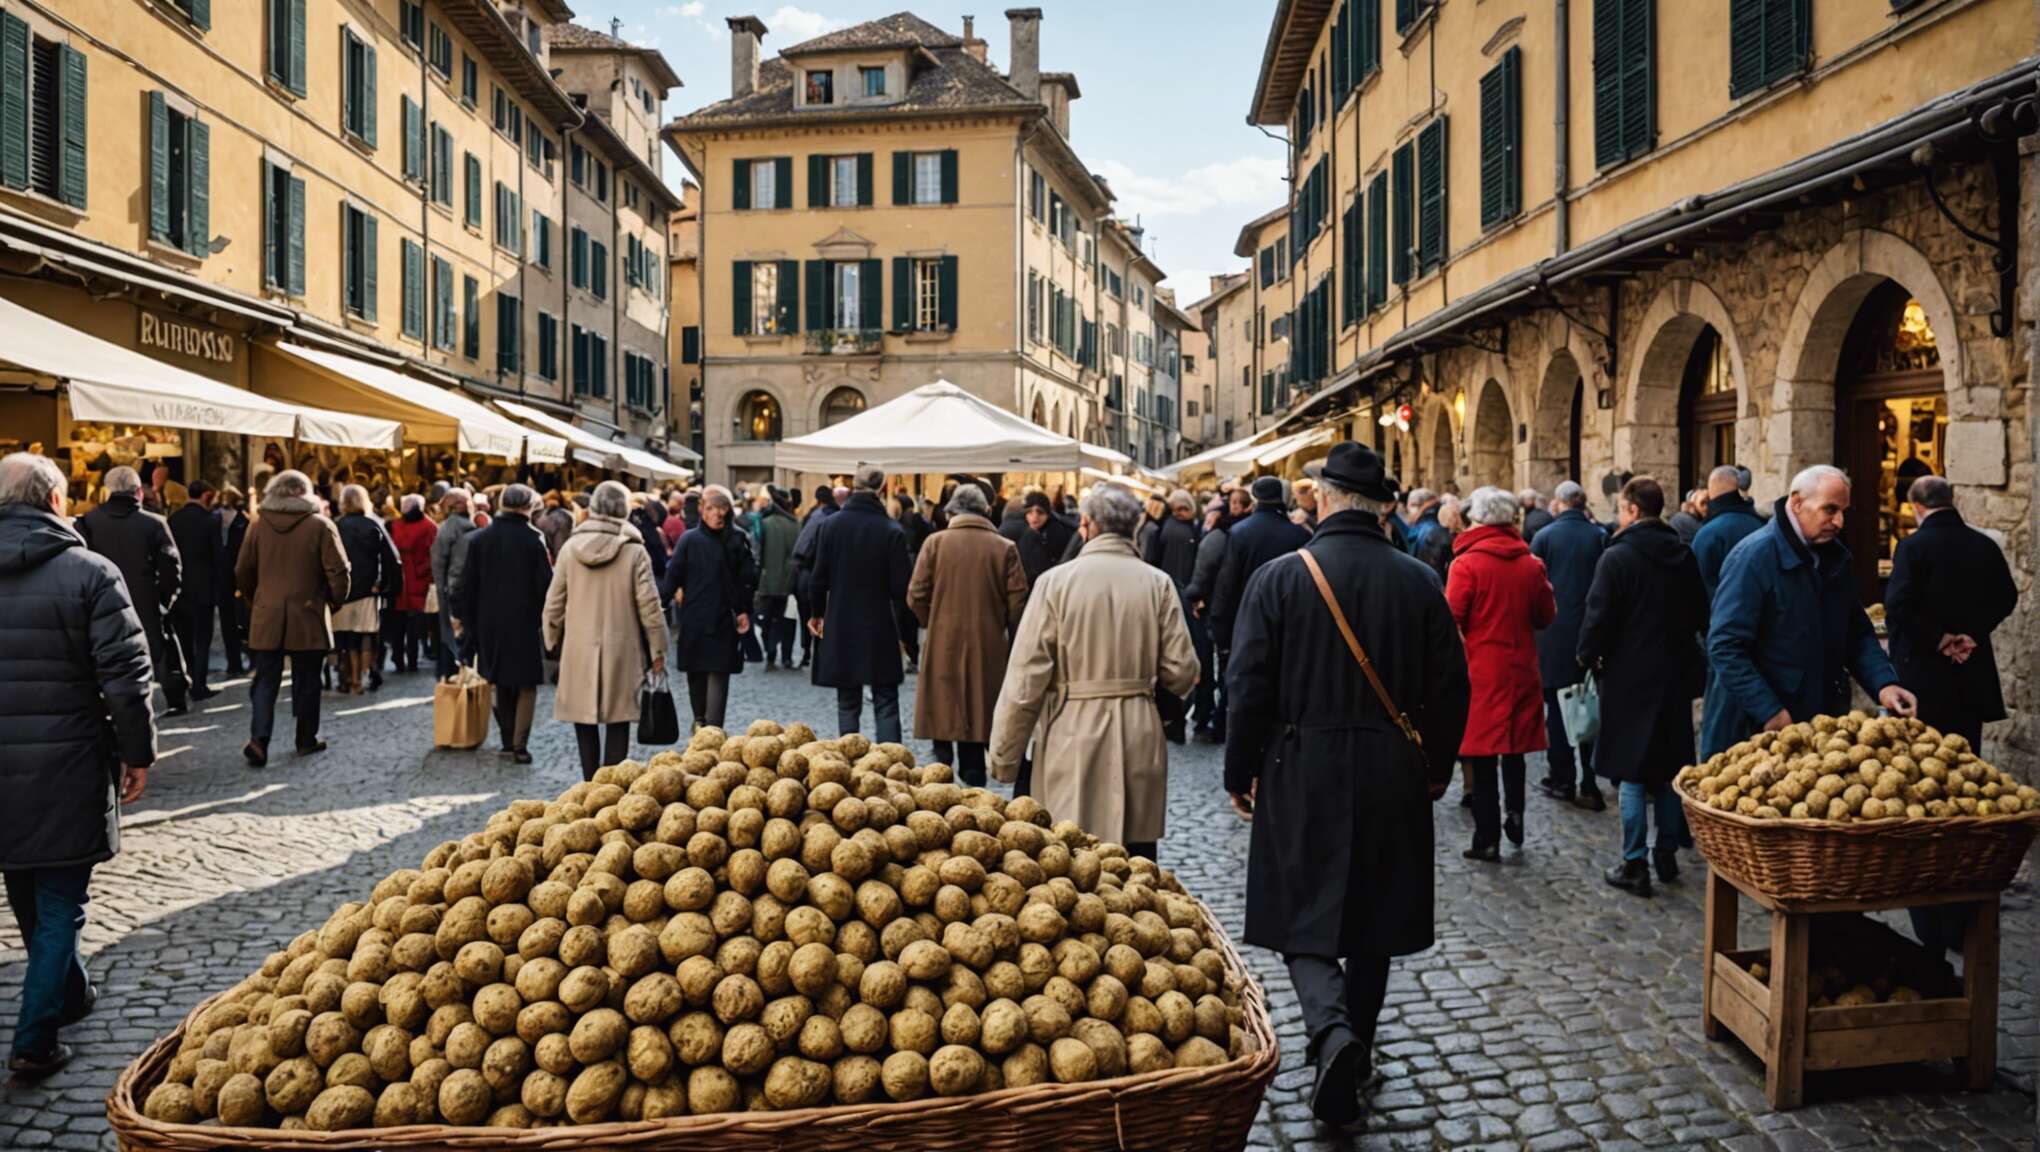 Les incontournables foires à la truffe blanche en italie